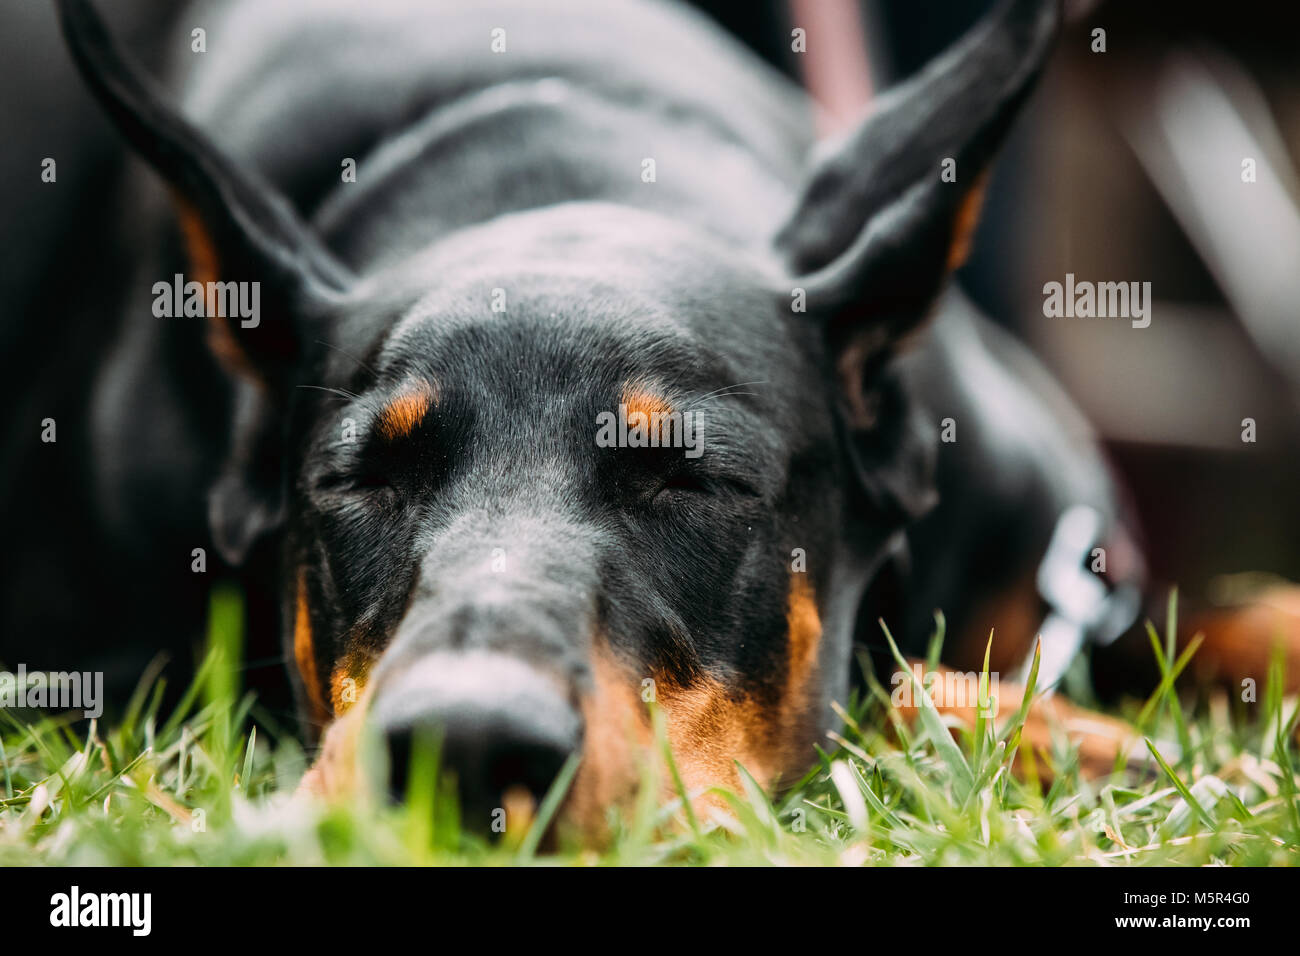 Jung, schön, Schwarz und tan Dobermann Ruhe im grünen Gras. Dobermann ist eine Rasse Für, Intelligent, aufmerksam, und treuen Begleiter für Hunde. Stockfoto